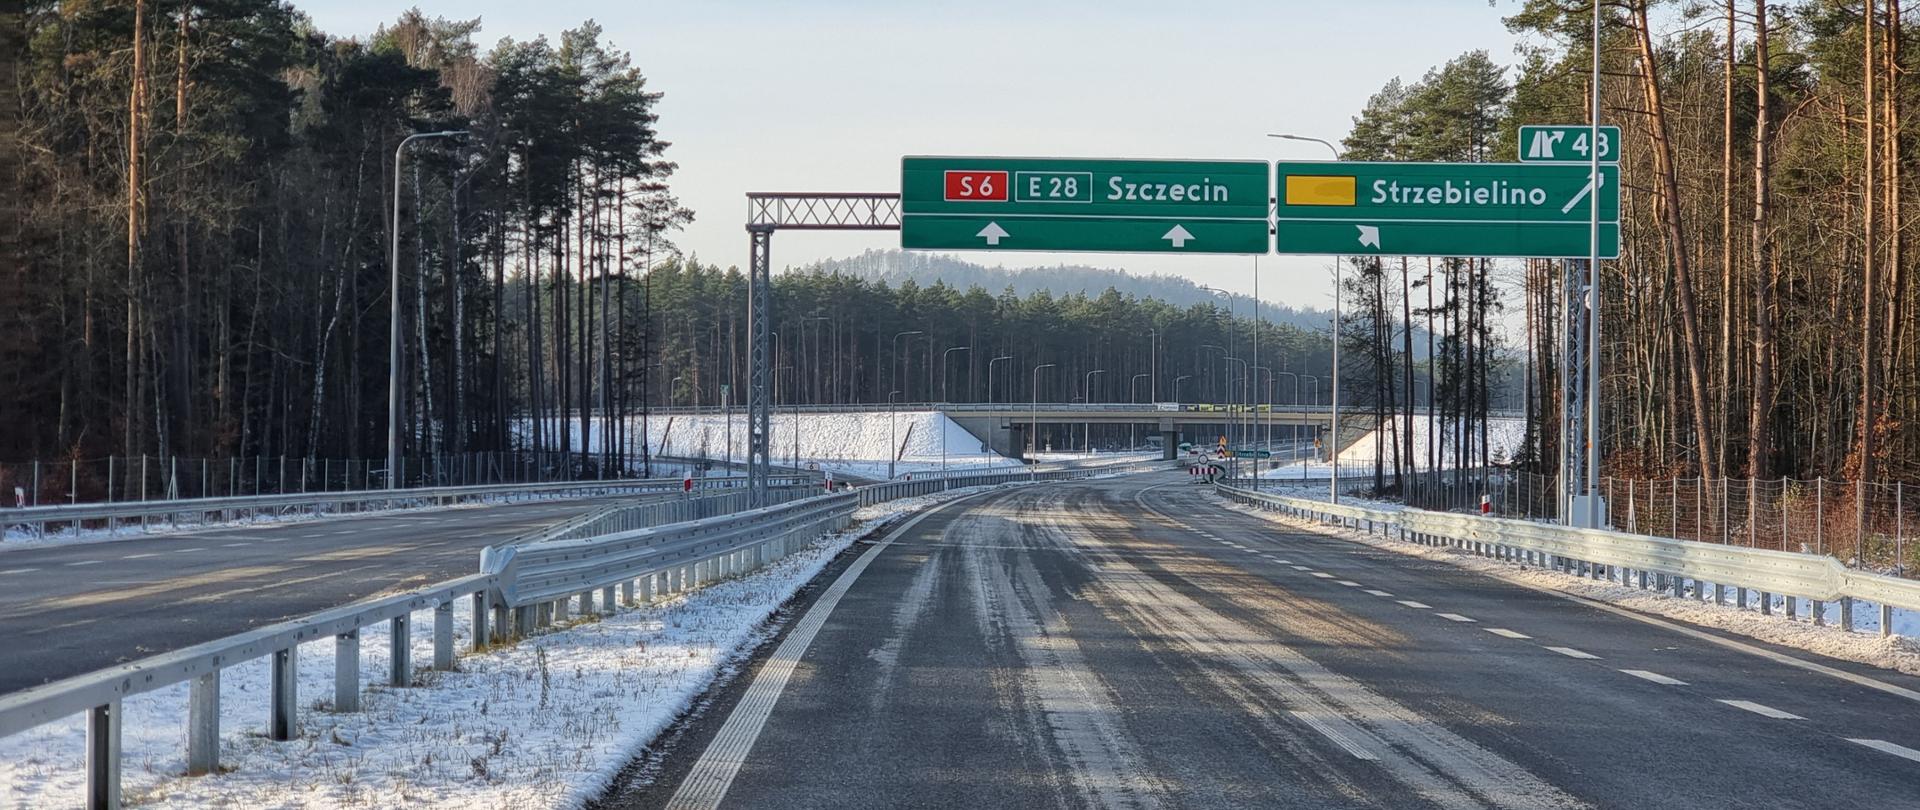 Zdjęcie przedstawia drogę ekspresową S6 w pobliżu węzła Strzebielino. Na pierwszym planie jezdnia prowadząca do Szczecina. Nad drogą wisi tablica drogowskazowa na Szczecin i Strzebielino, a na drugim planie widać wiadukt na węźle.